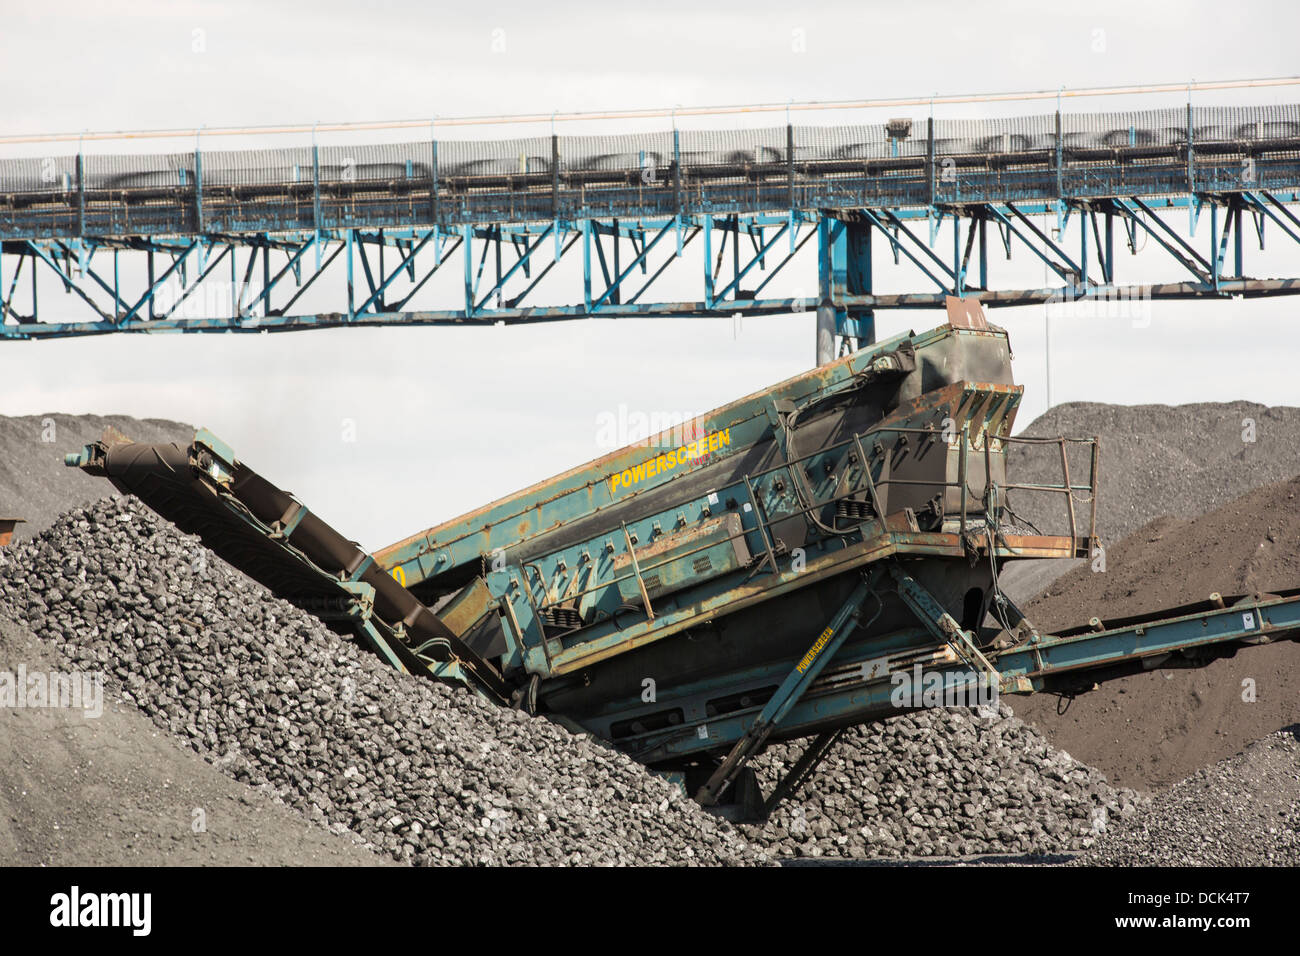 Le charbon sur les quais à Hull, sur l'estuaire de la Humber, Yorkshire, UK. Banque D'Images